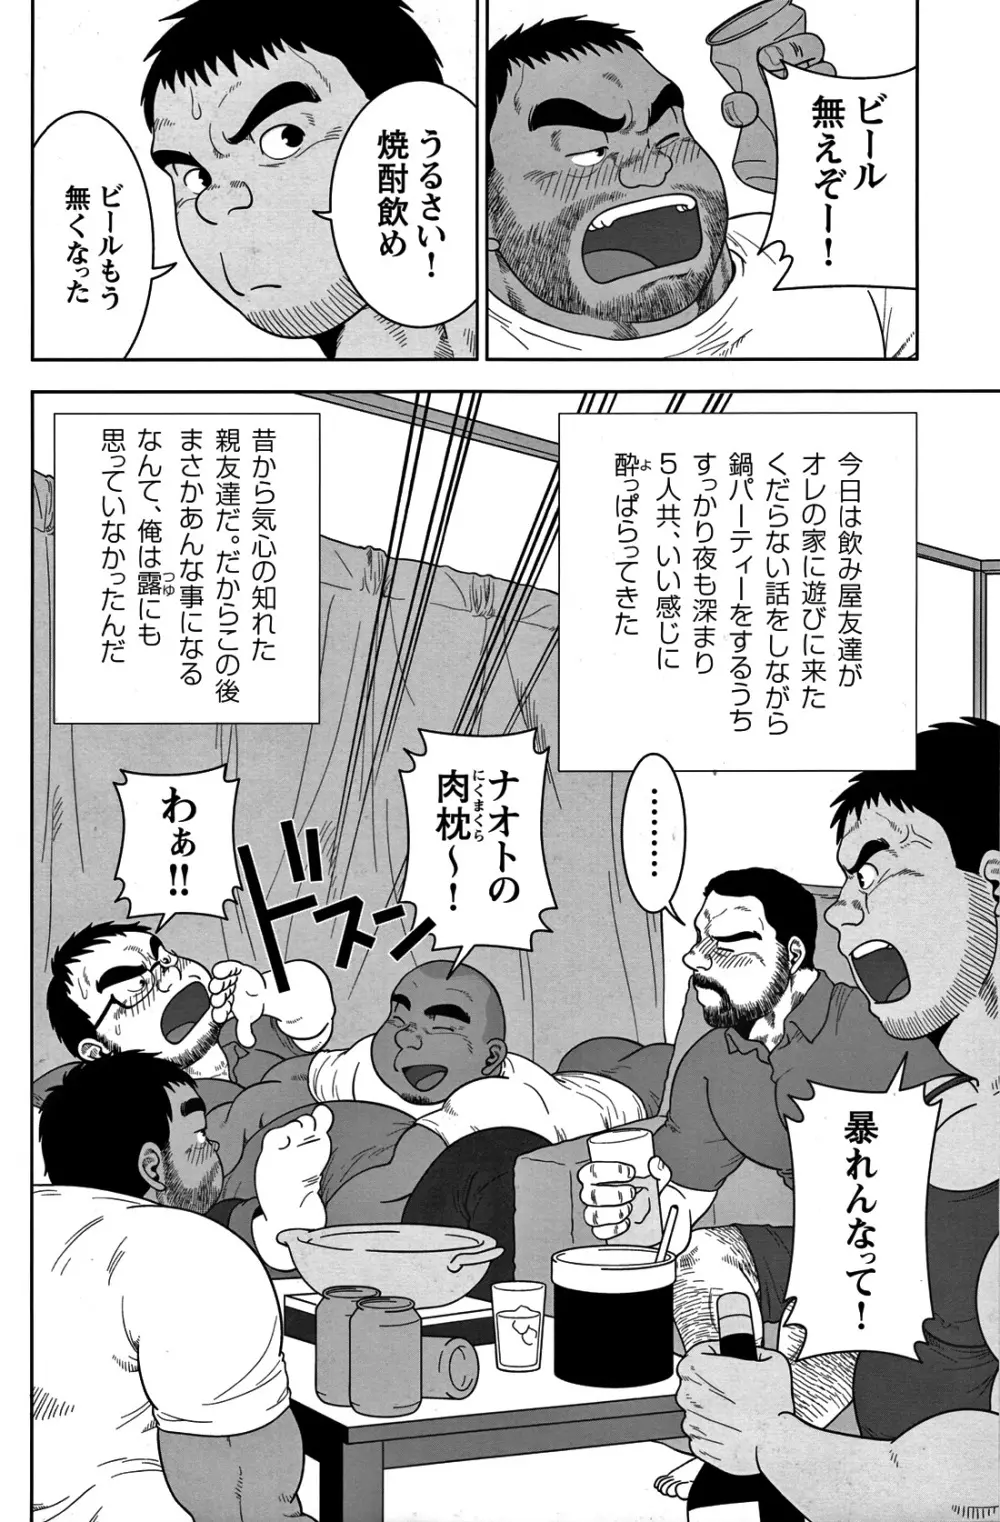 Comic G-men Gaho No.05 148ページ